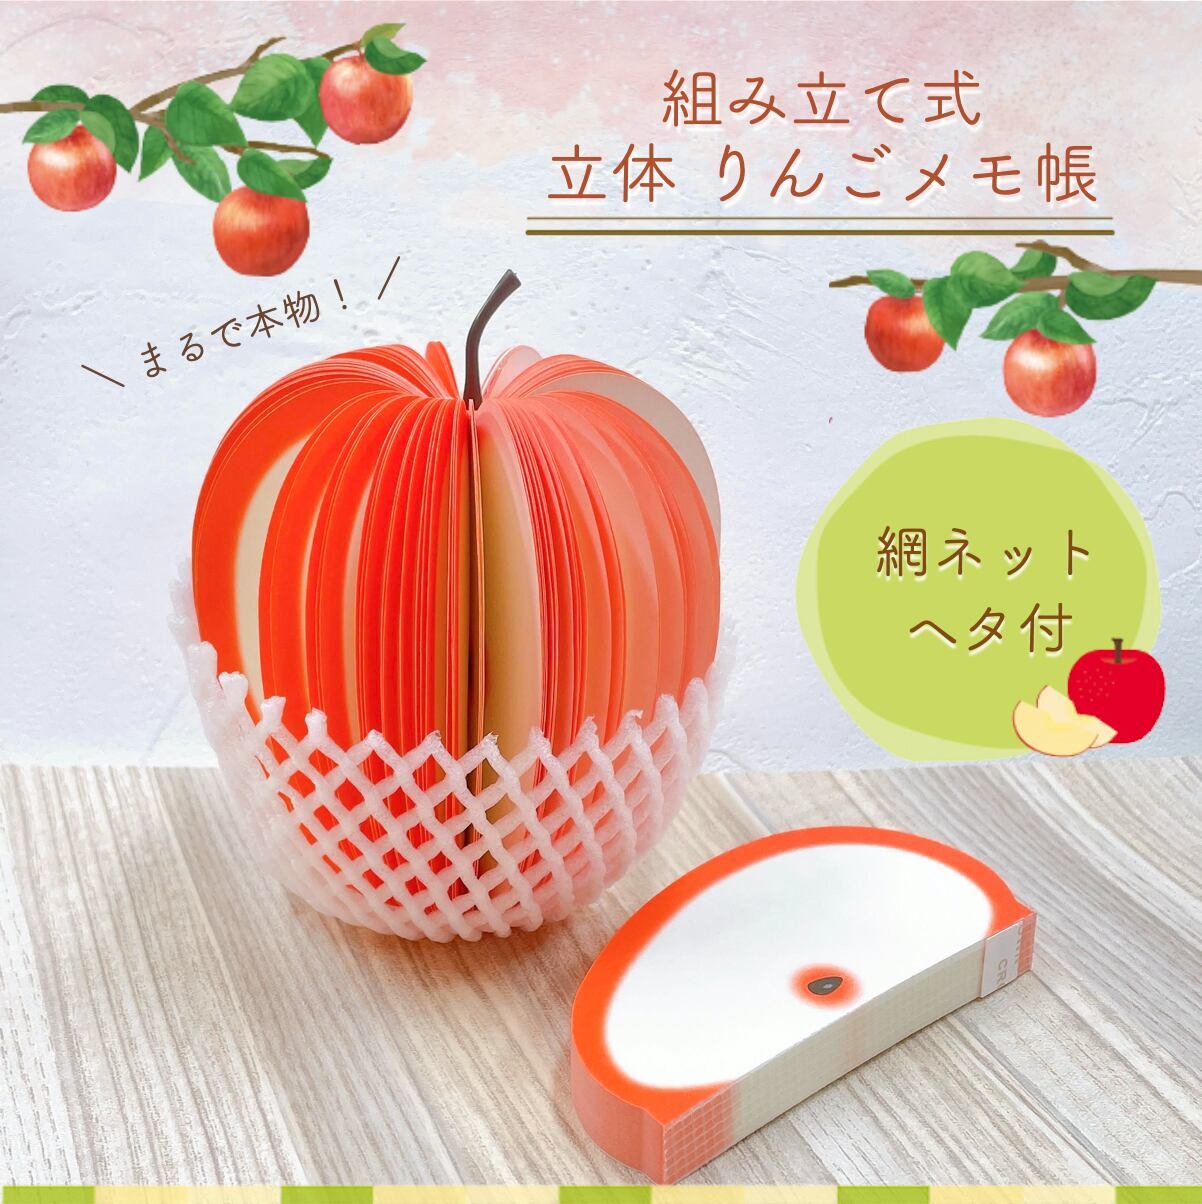 組み立て 立体 3D りんご メモ帳】ヘタ 網ネット付き フルーツ リンゴ